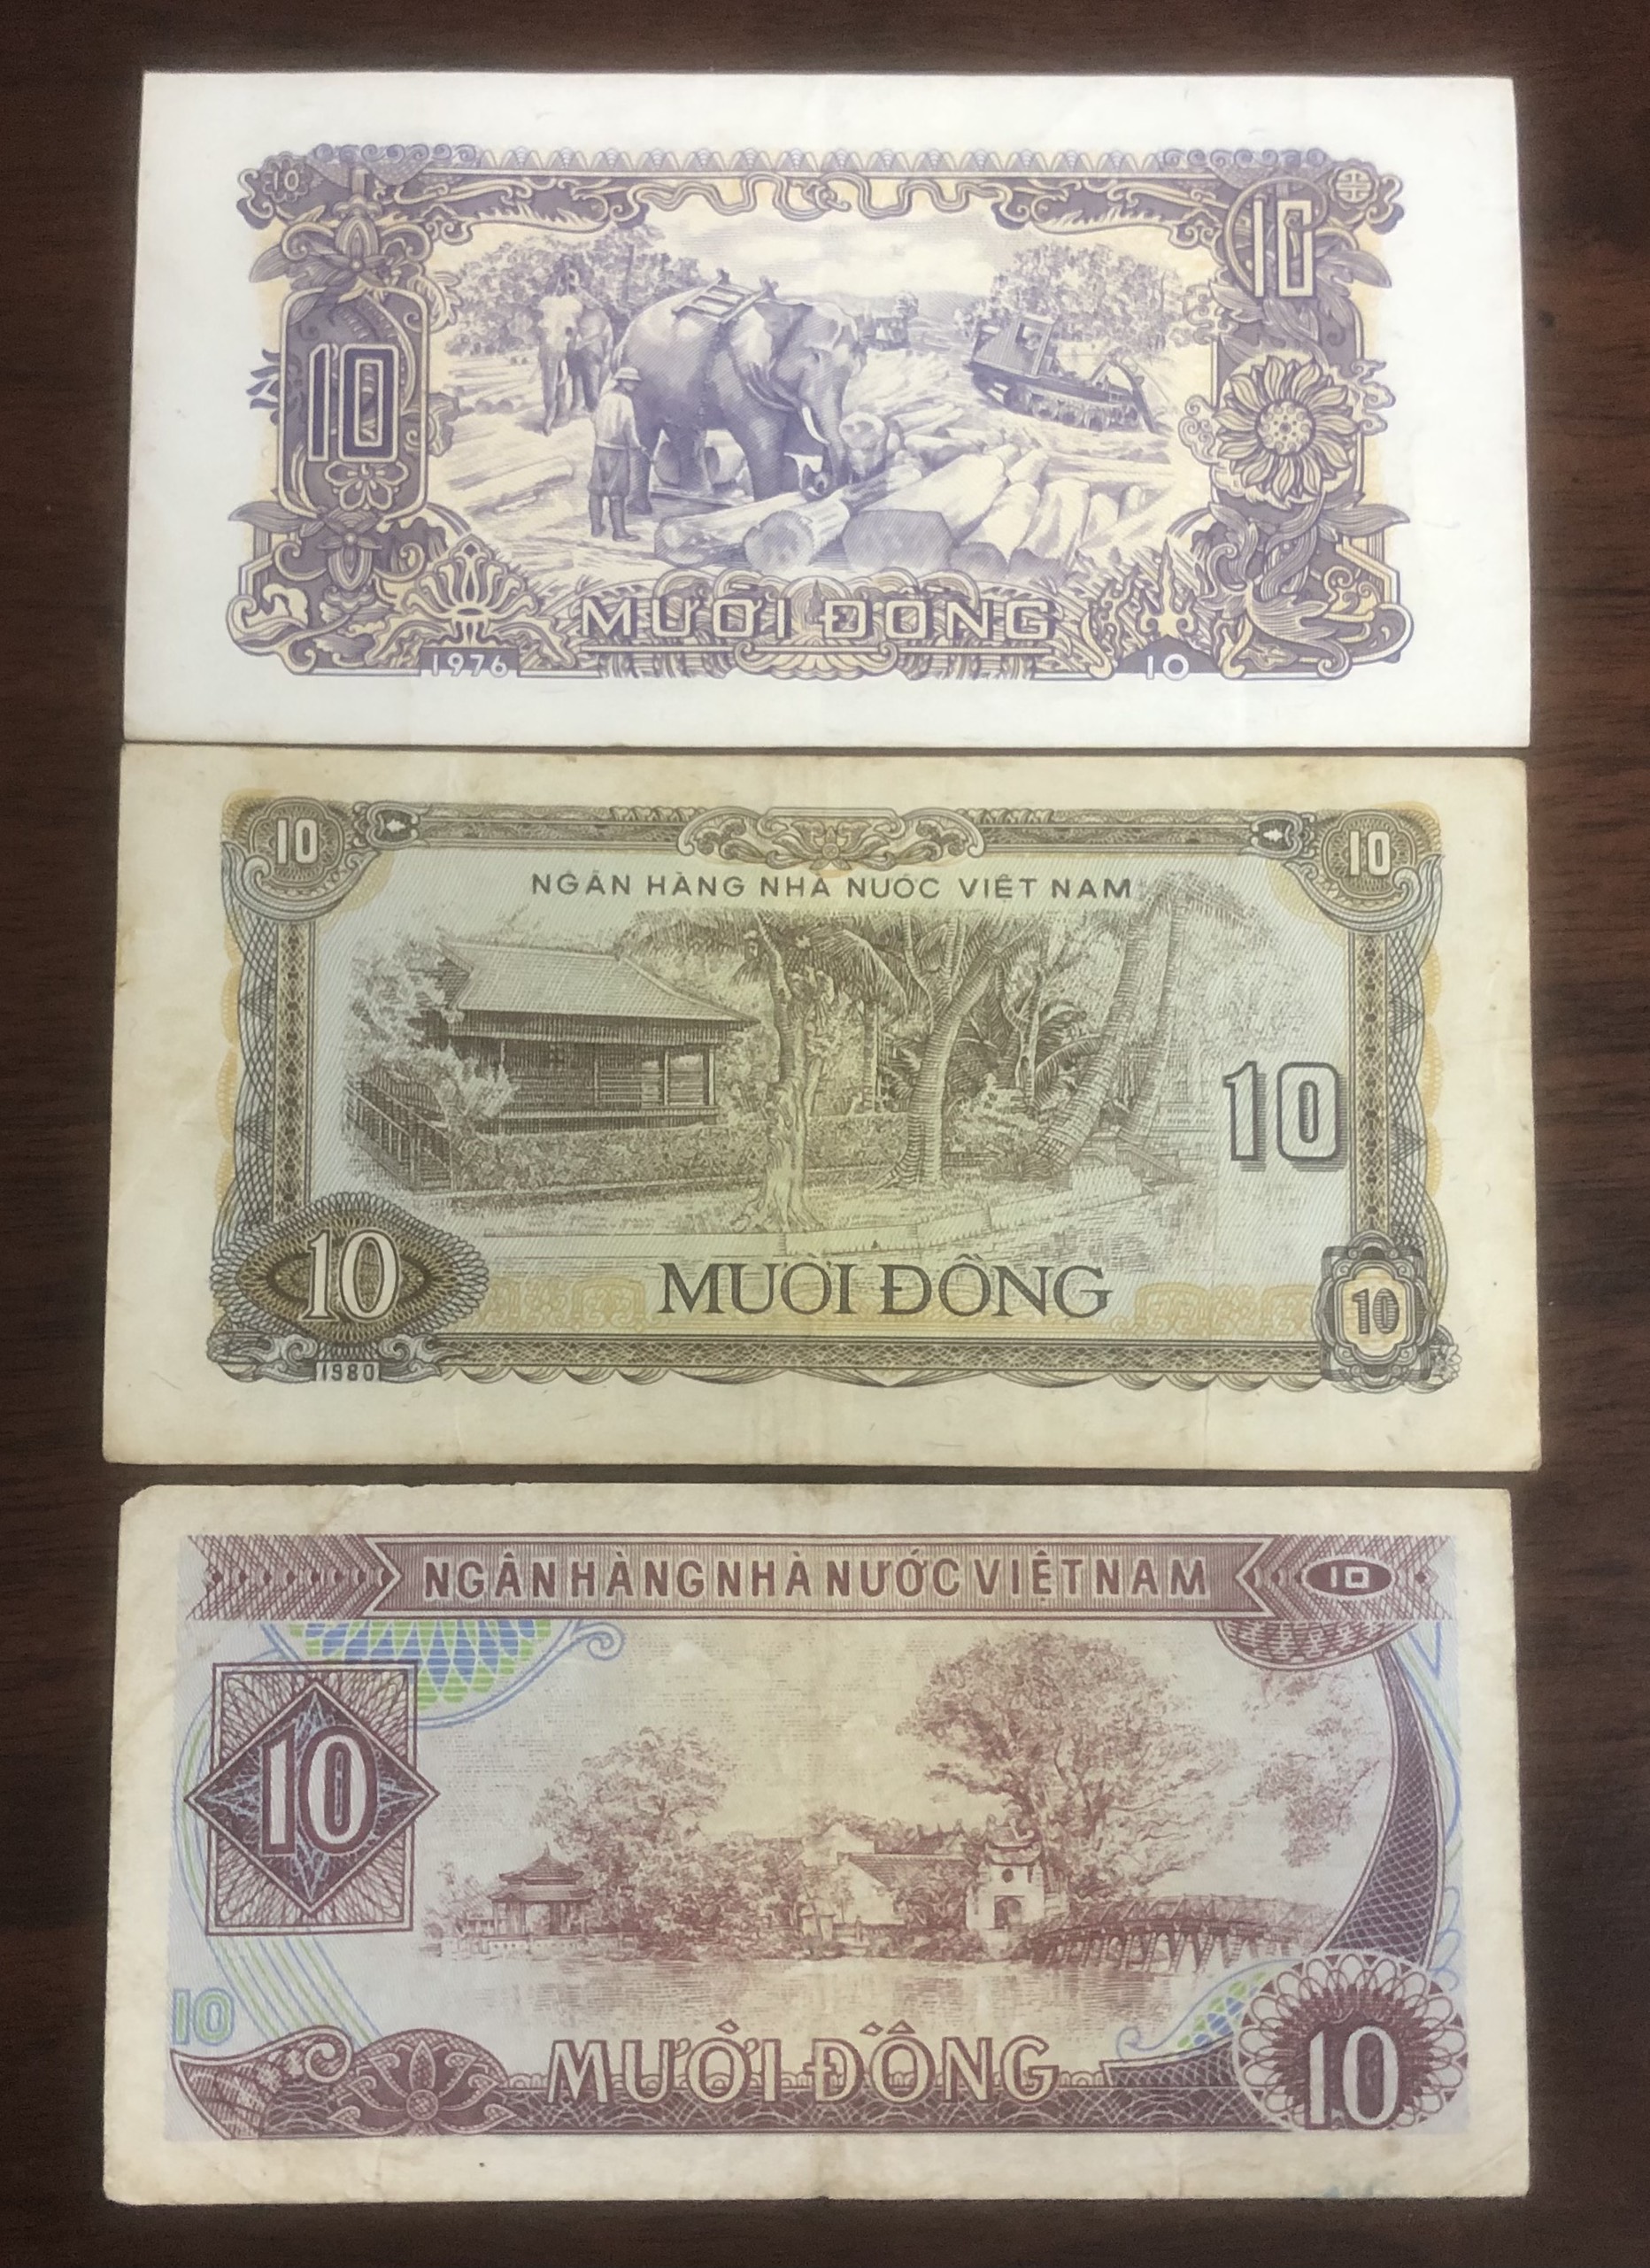 Tiền Việt Nam mệnh giá 10 đồng, 3 tờ phát hành khác giai đoạn